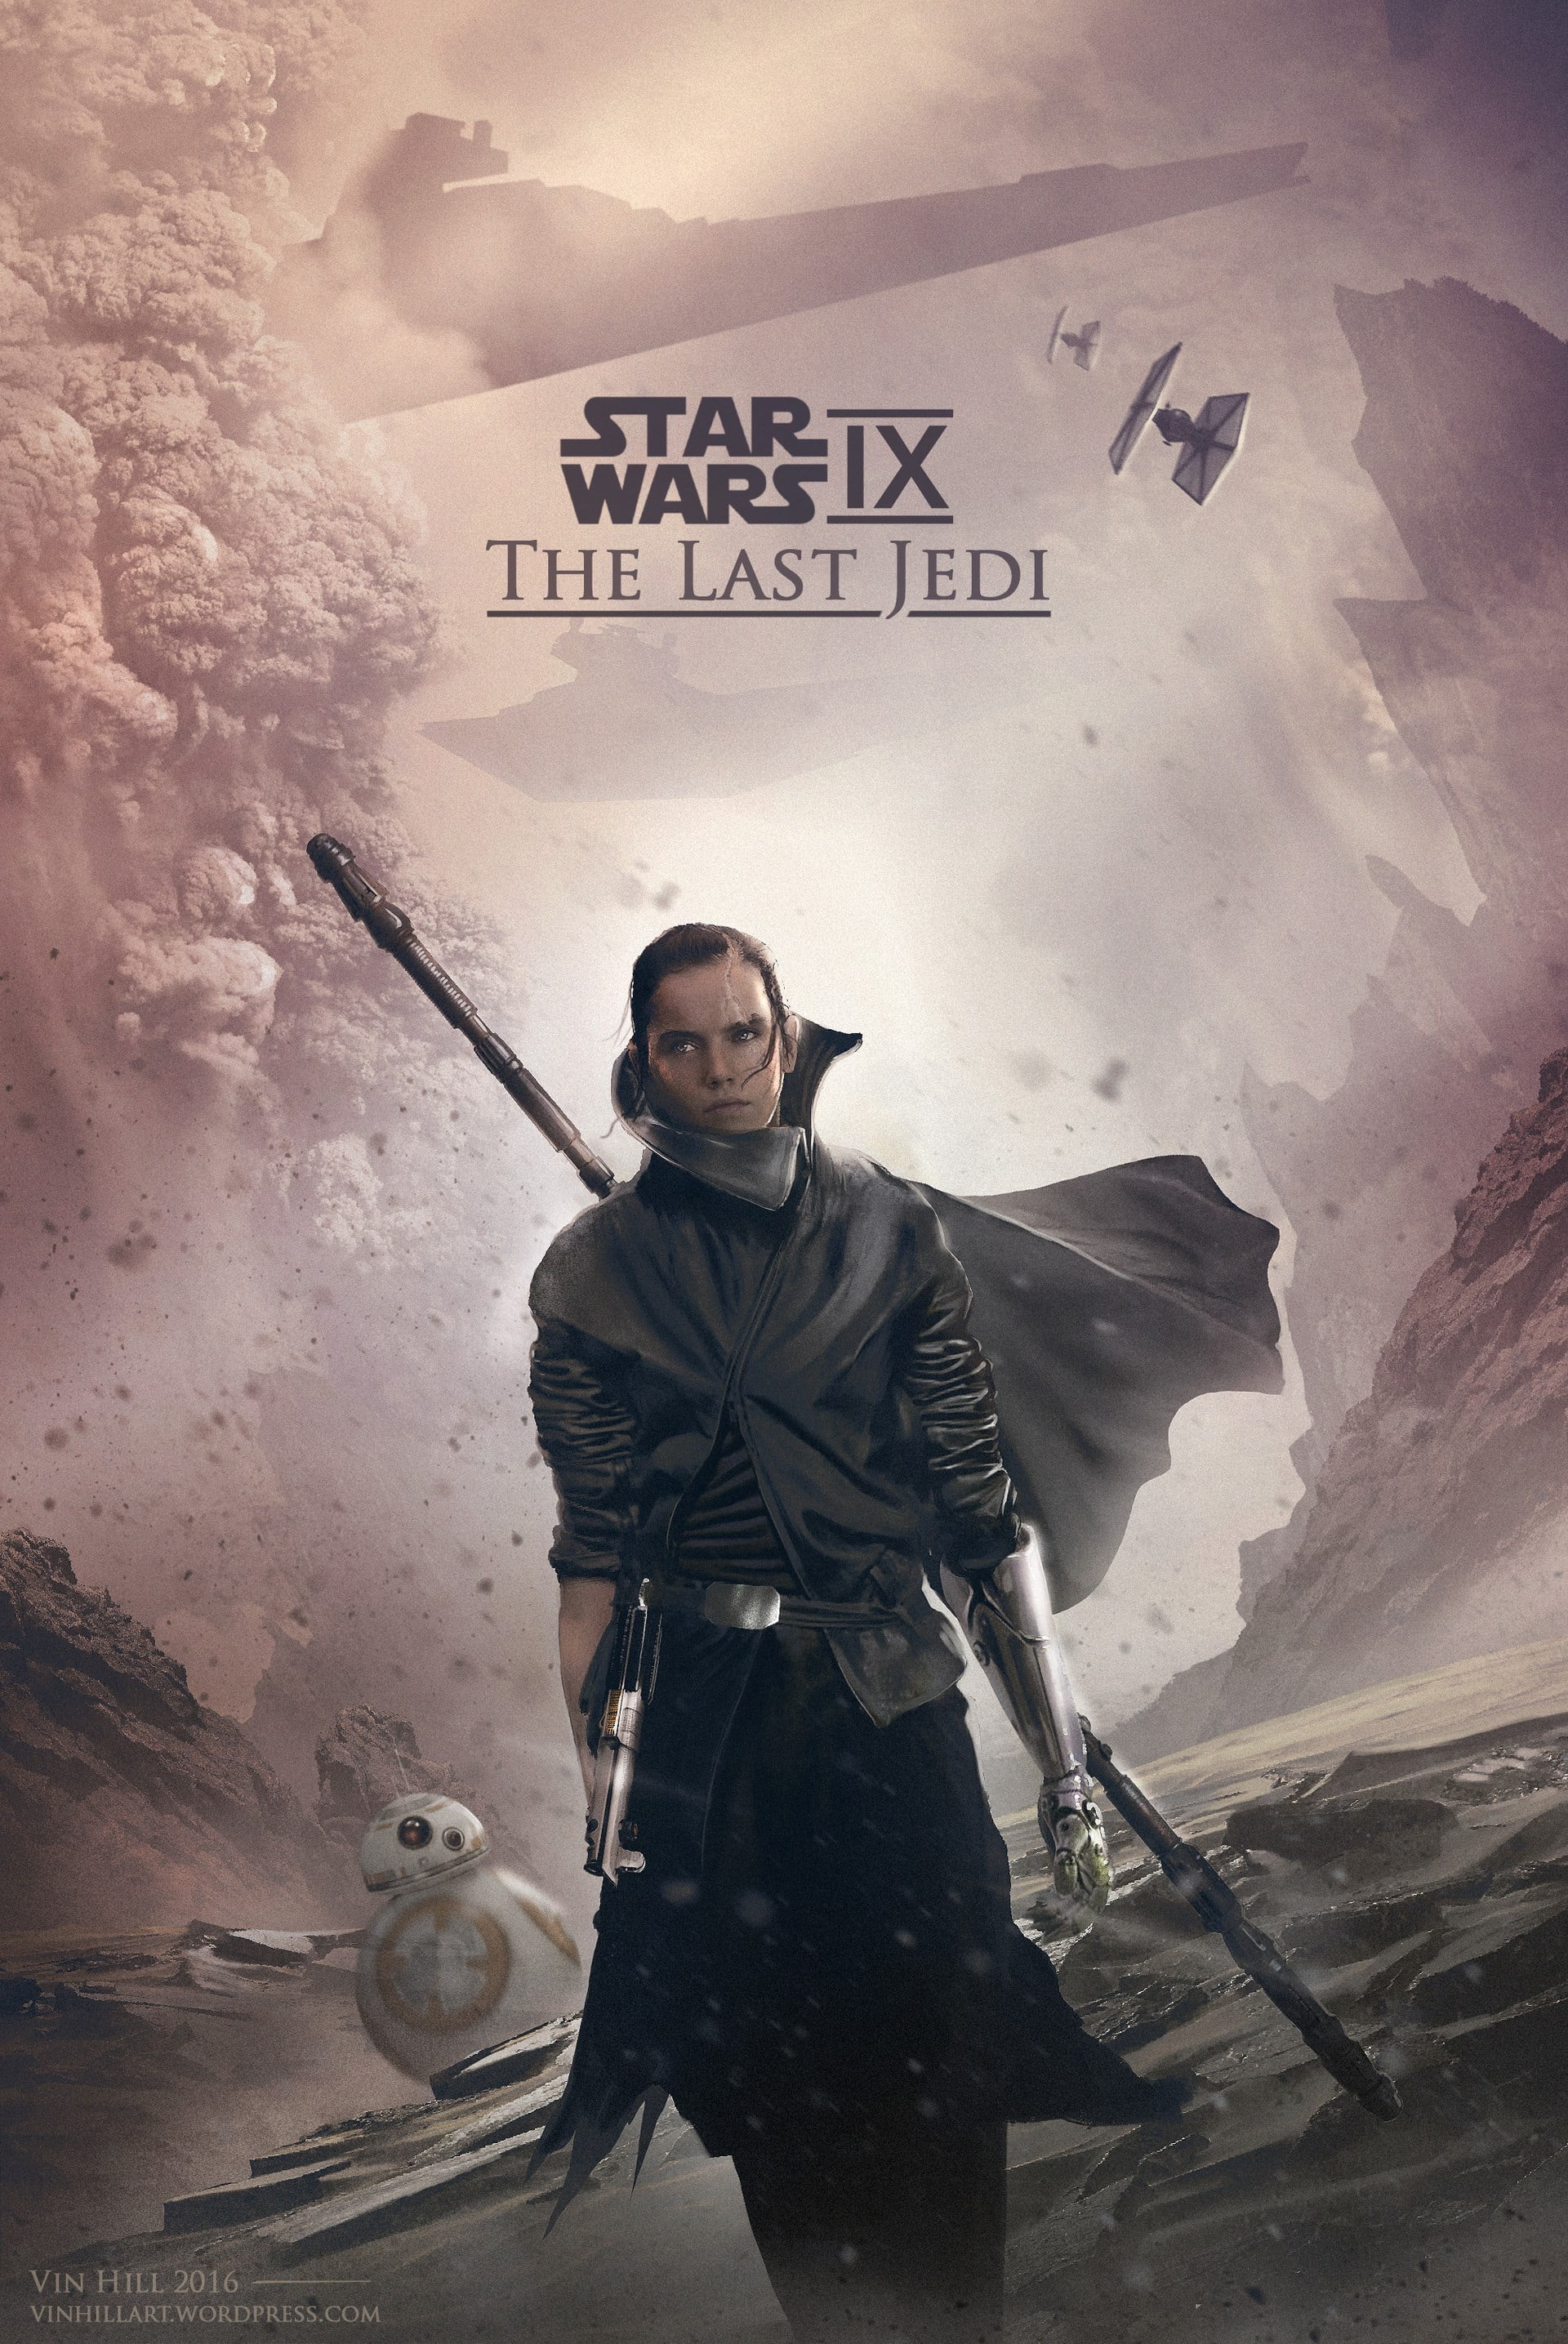 Star Wars IX The Last Jedi poster, Wars, Rey (from Star Wars), fan art, Star Wars: The Last Jedi HD wallpaper | Wallpaper